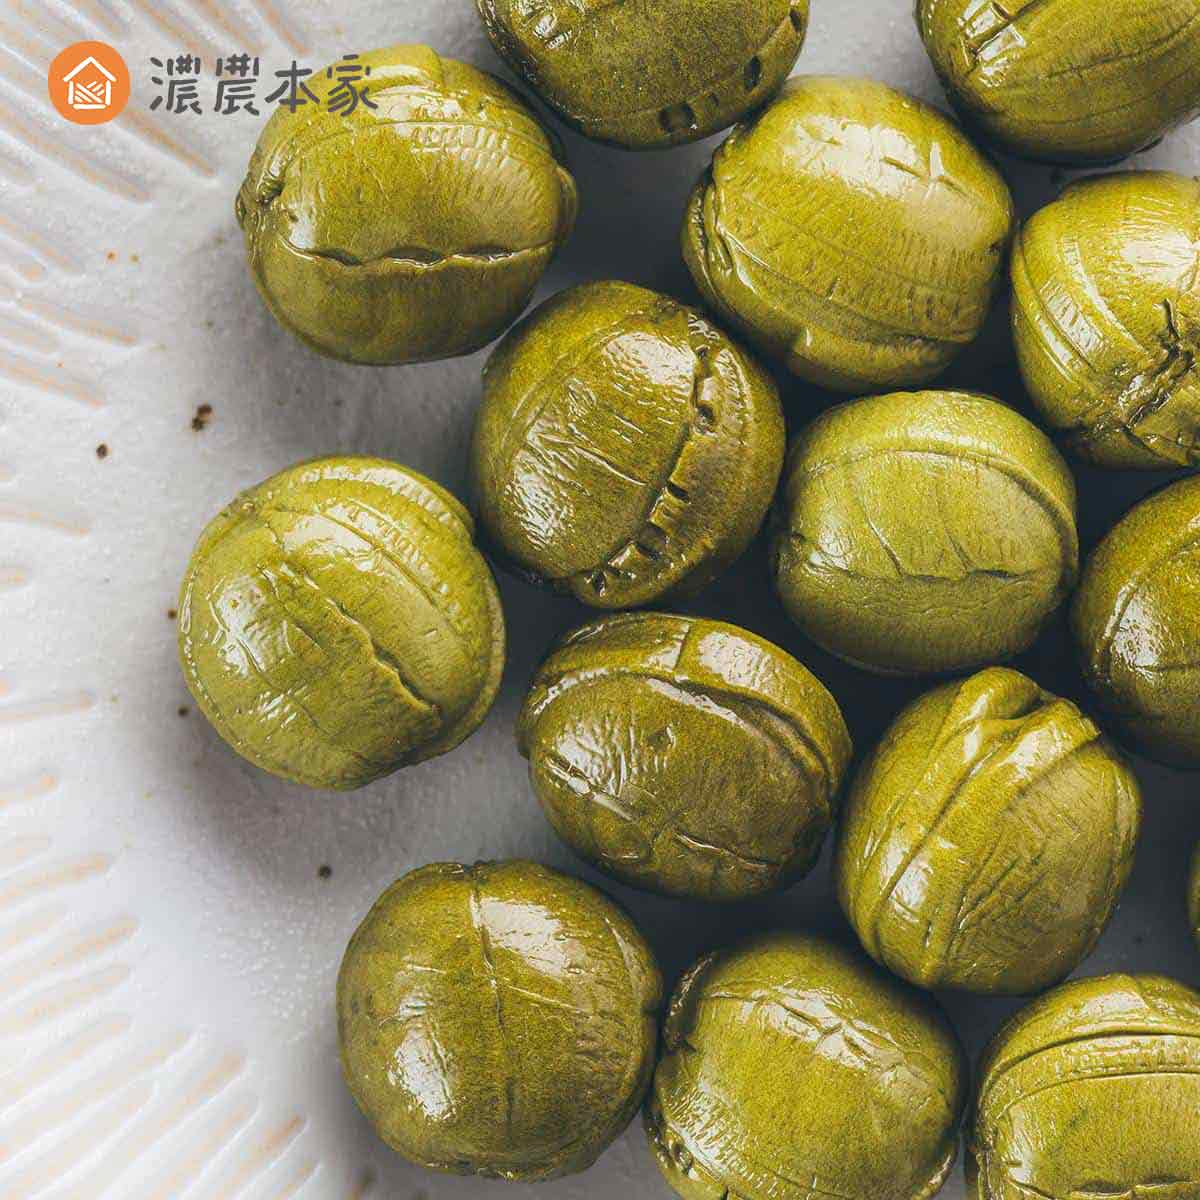 外國人喜歡台灣的零食推薦包種茶糖